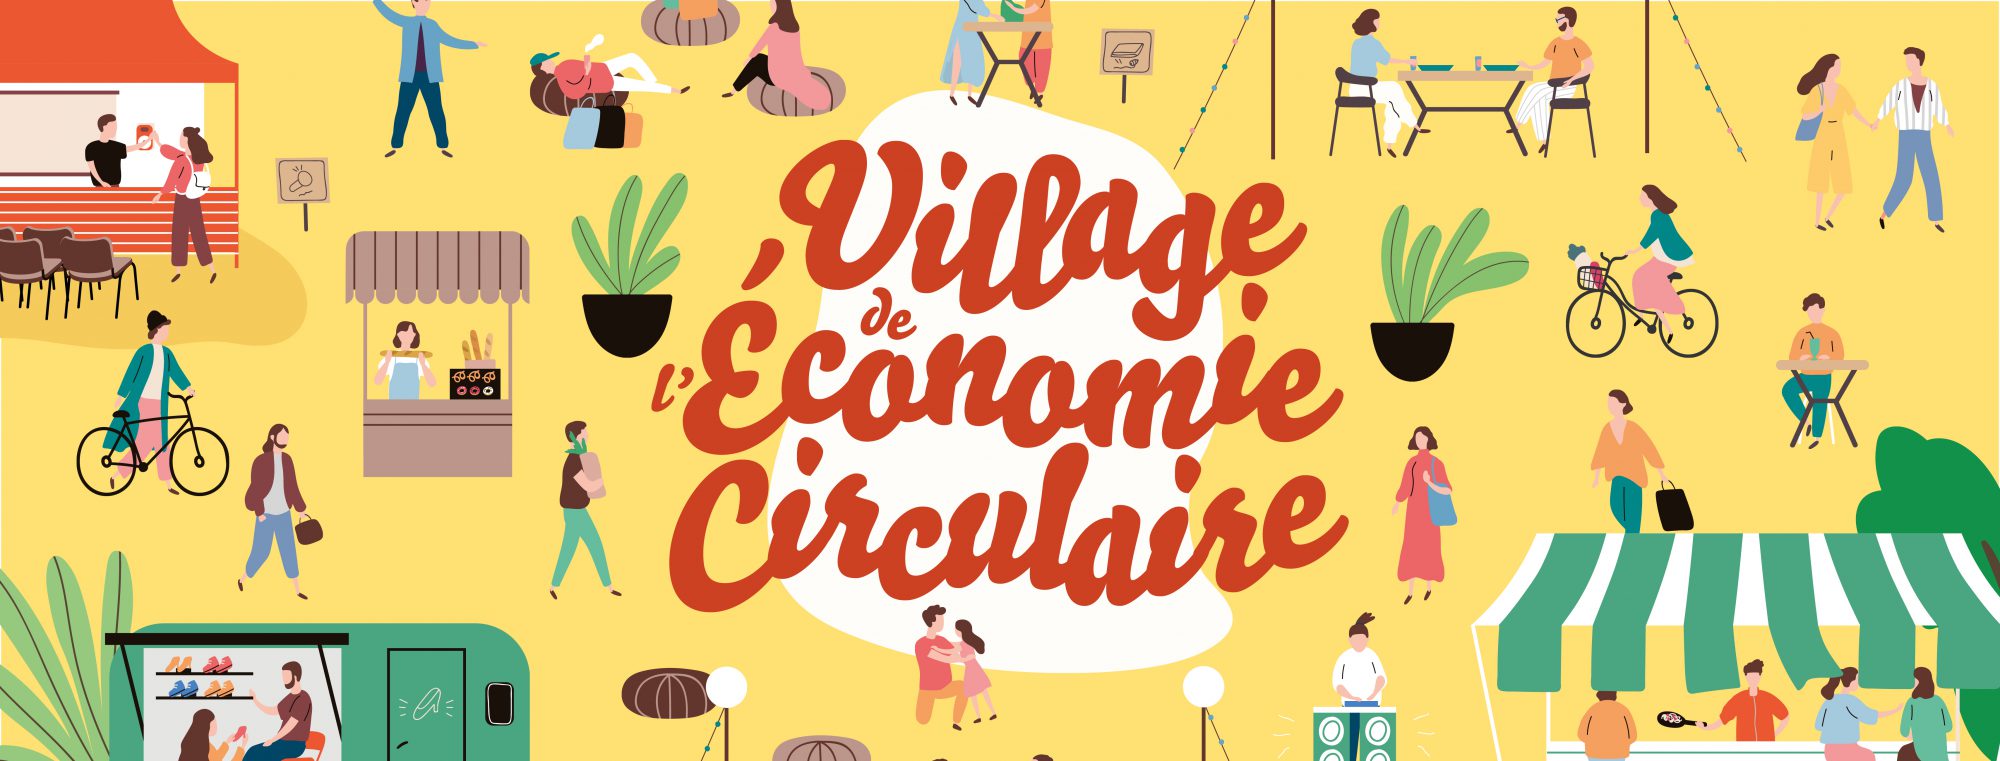 Couverture Site Internet – Village de l’Economie Circulaire